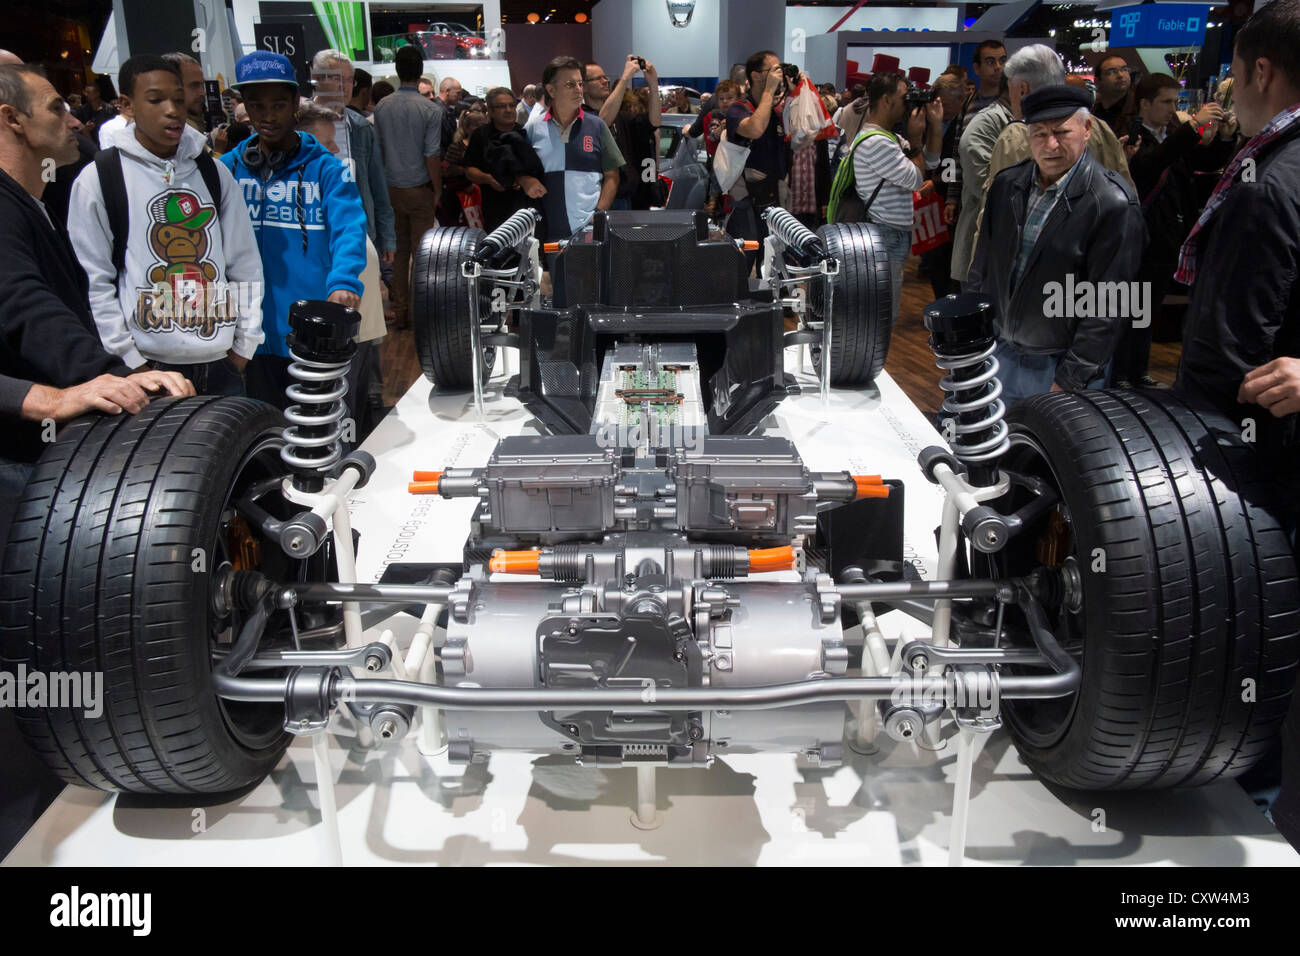 Cortar lejos de chasis y motor eléctrico del nuevo Mercedes Benz SLS AMG auto deportivo de accionamiento eléctrico en Paris Motor Show 2012 Foto de stock